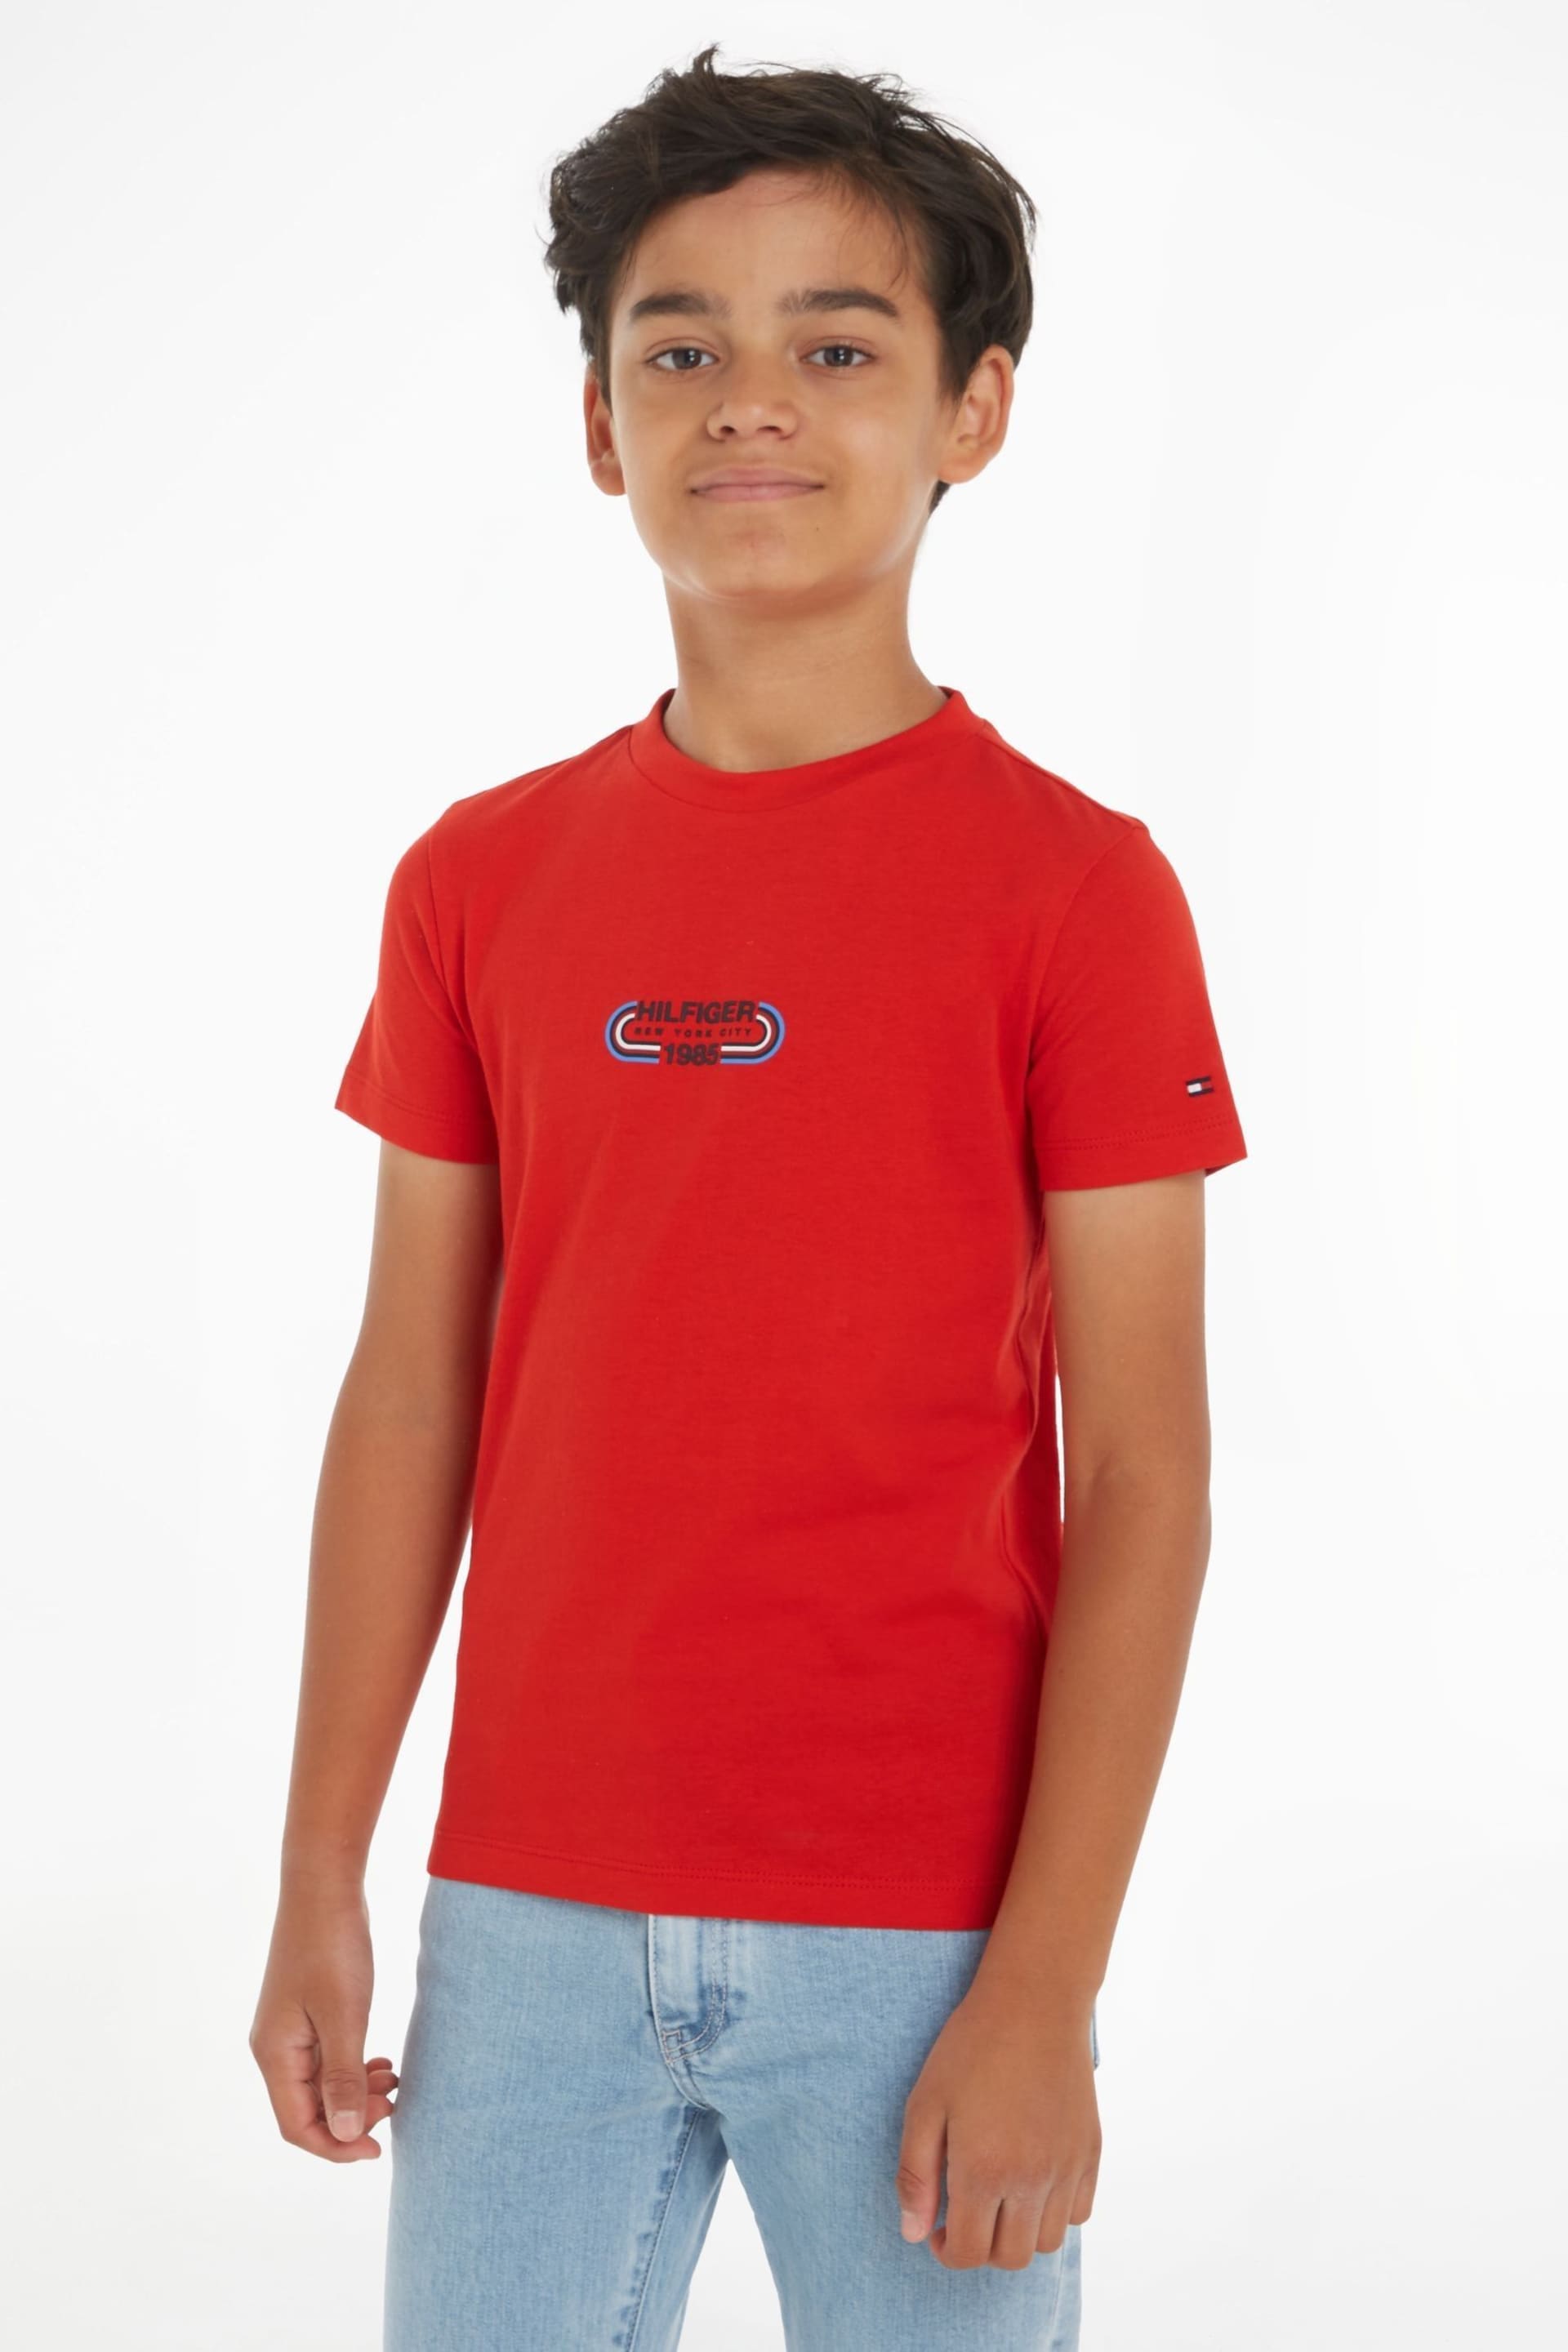 Tommy Hilfiger Hilfiger Track T-Shirt - Image 1 of 6